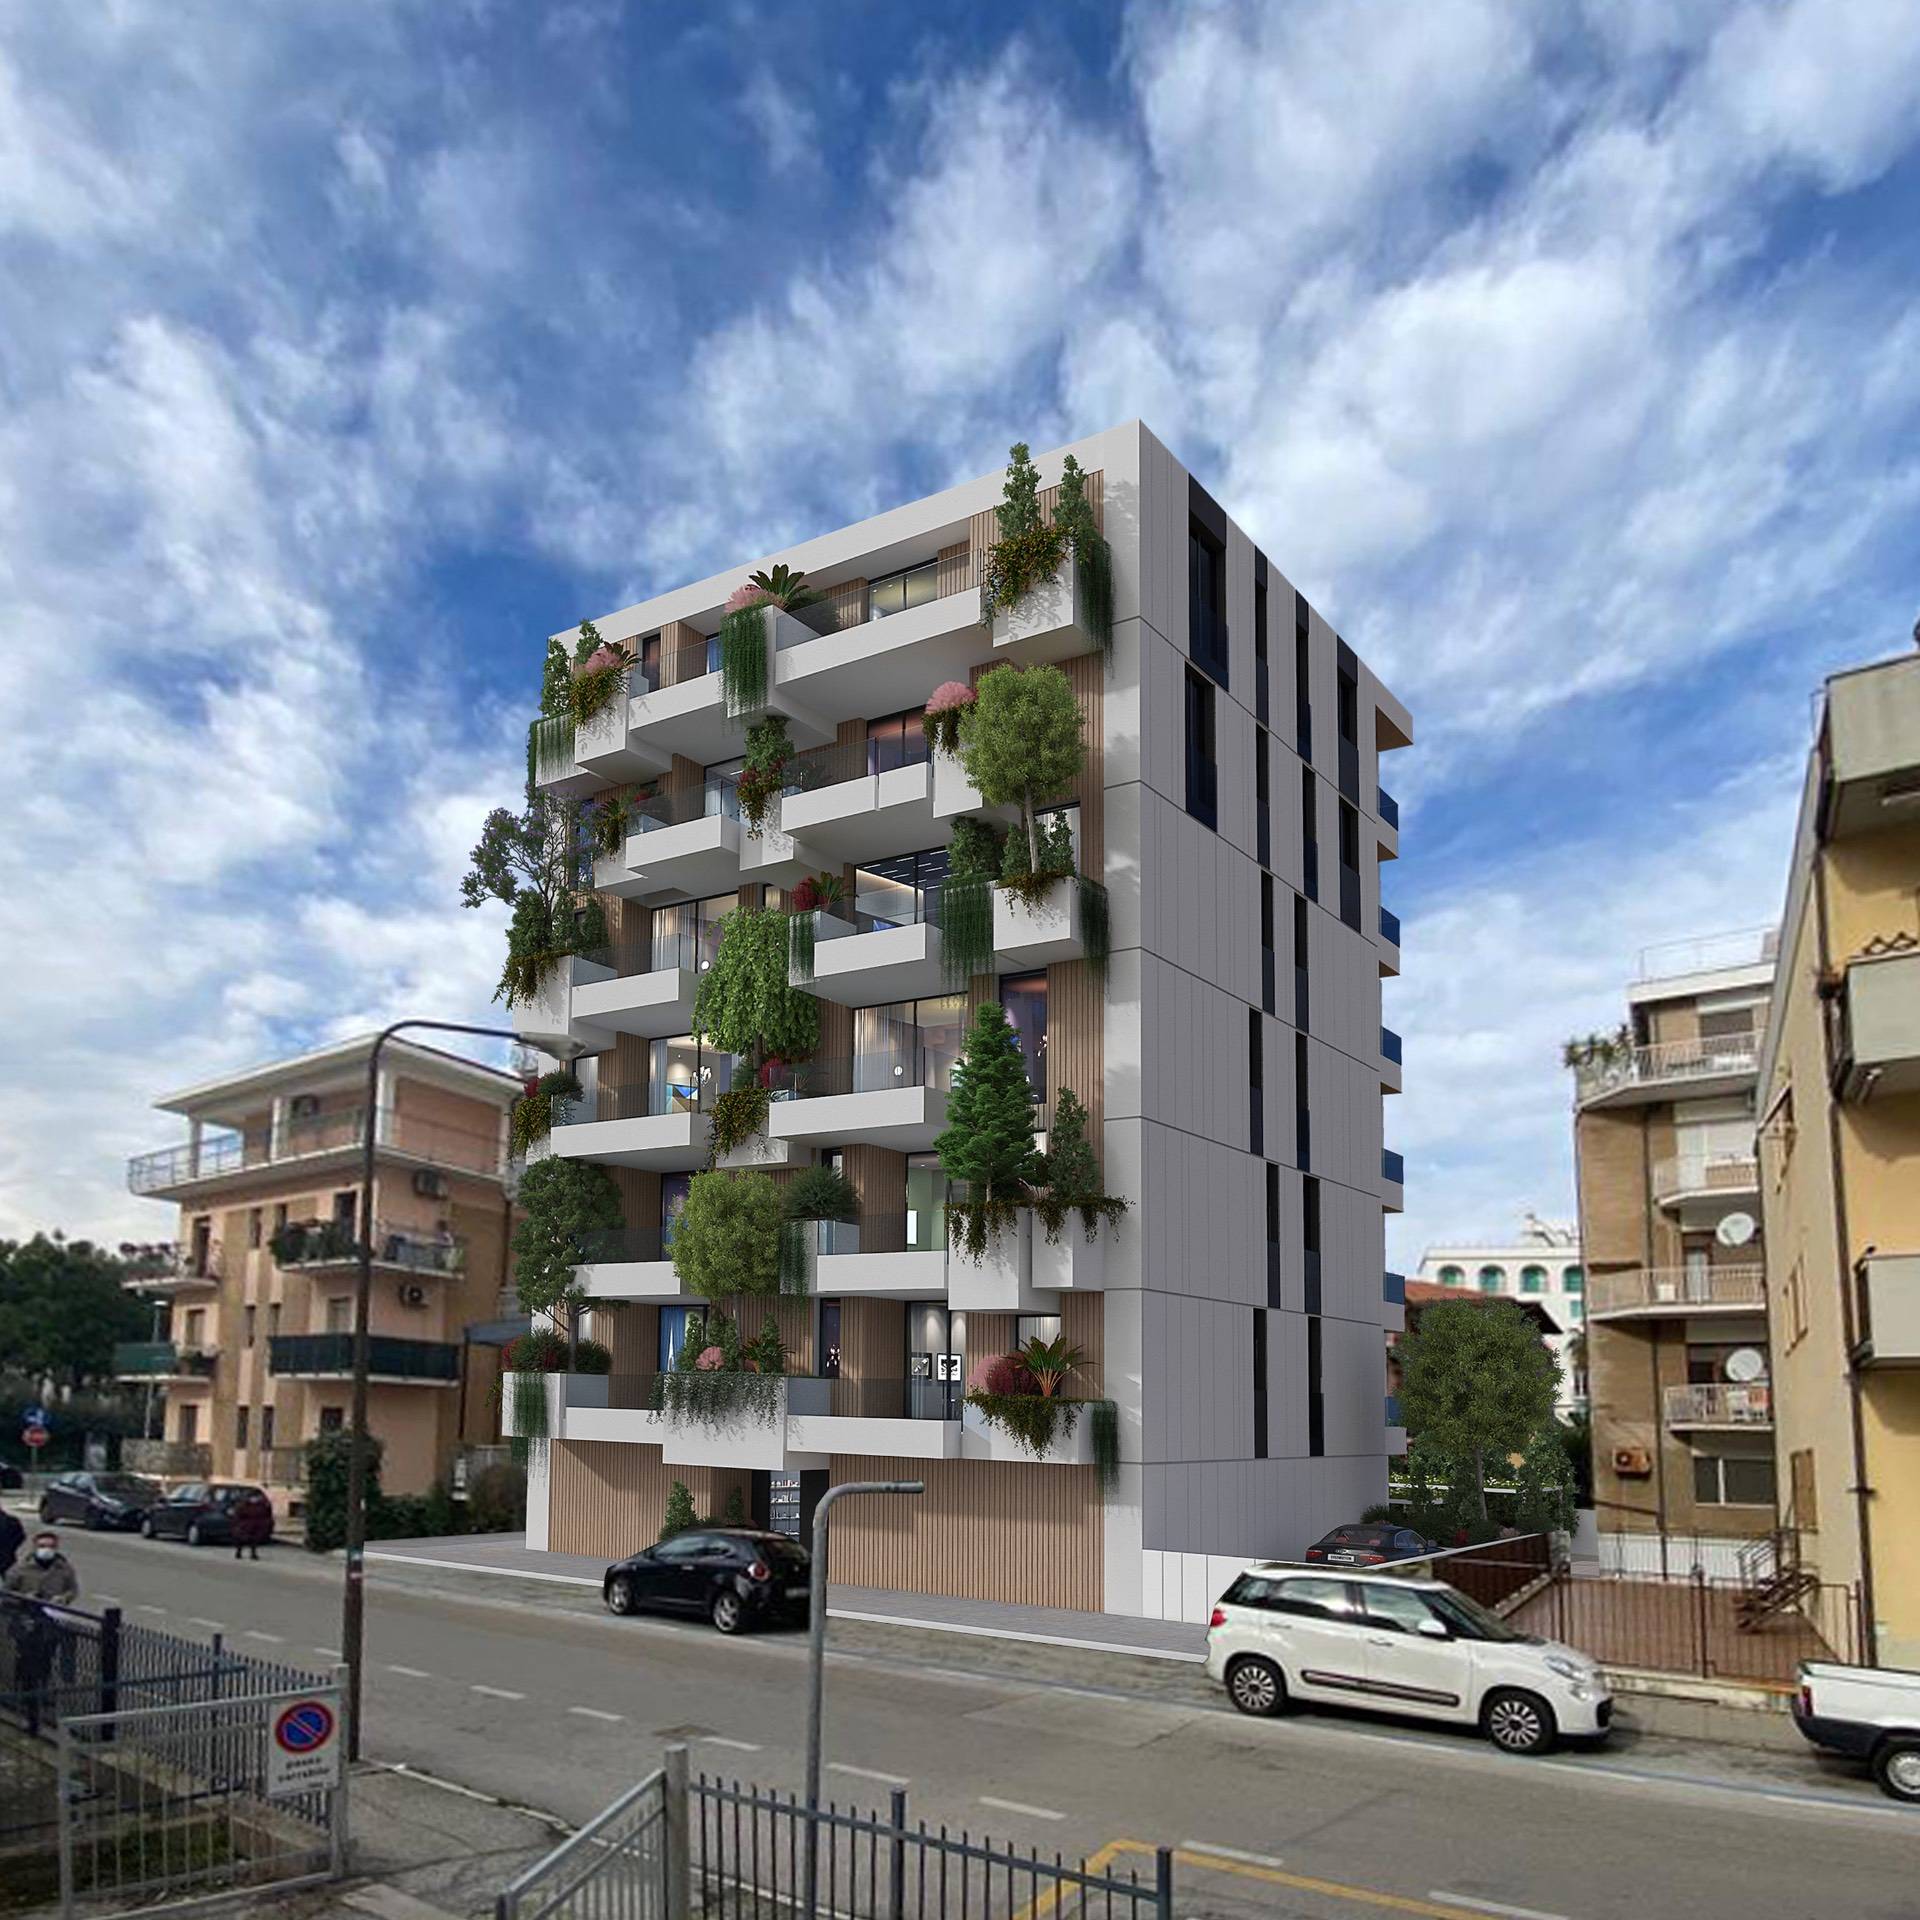 Appartamento in vendita a San Benedetto del Tronto, 2 locali, zona Località: PortoDascolilungomare, prezzo € 360.000 | PortaleAgenzieImmobiliari.it